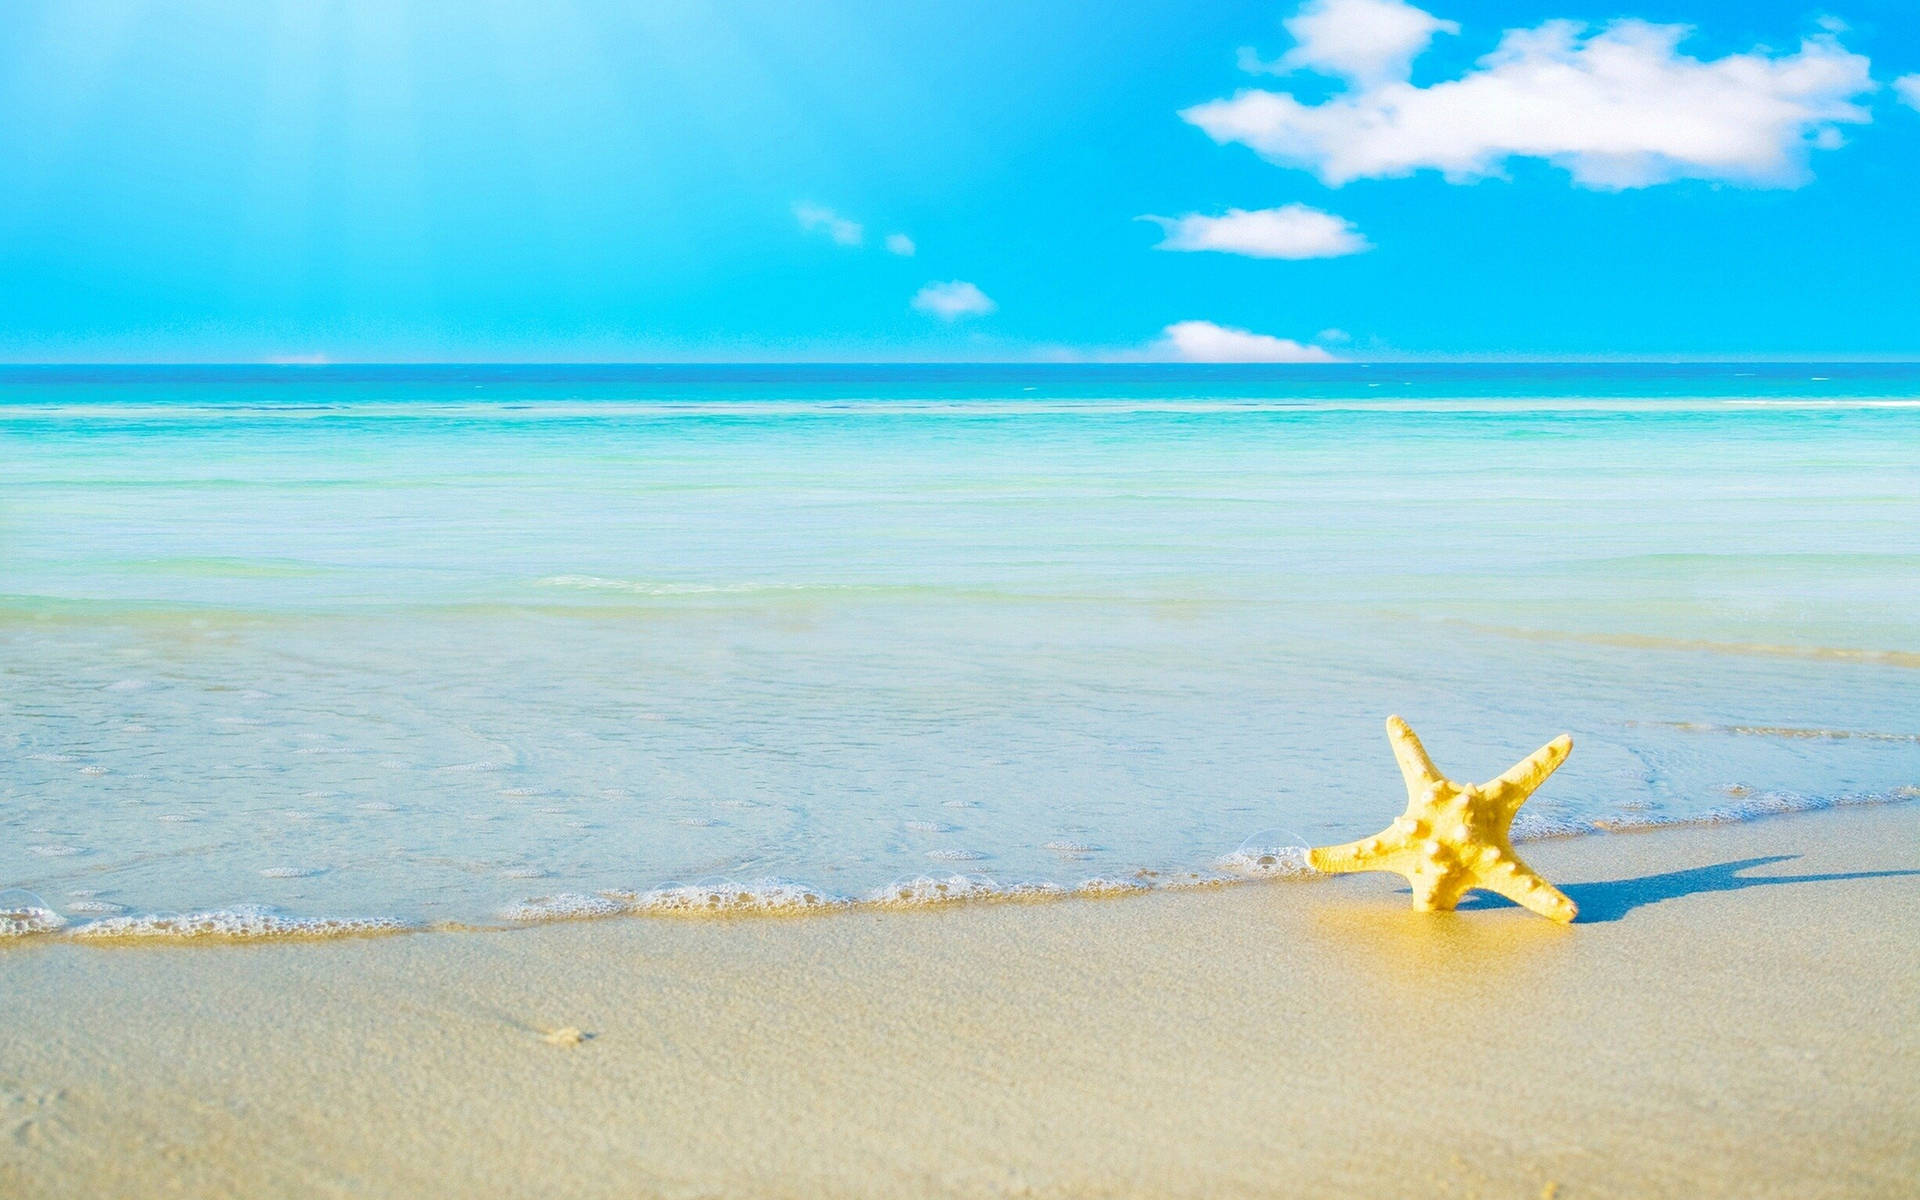 Cute Summer Starfish At Beach